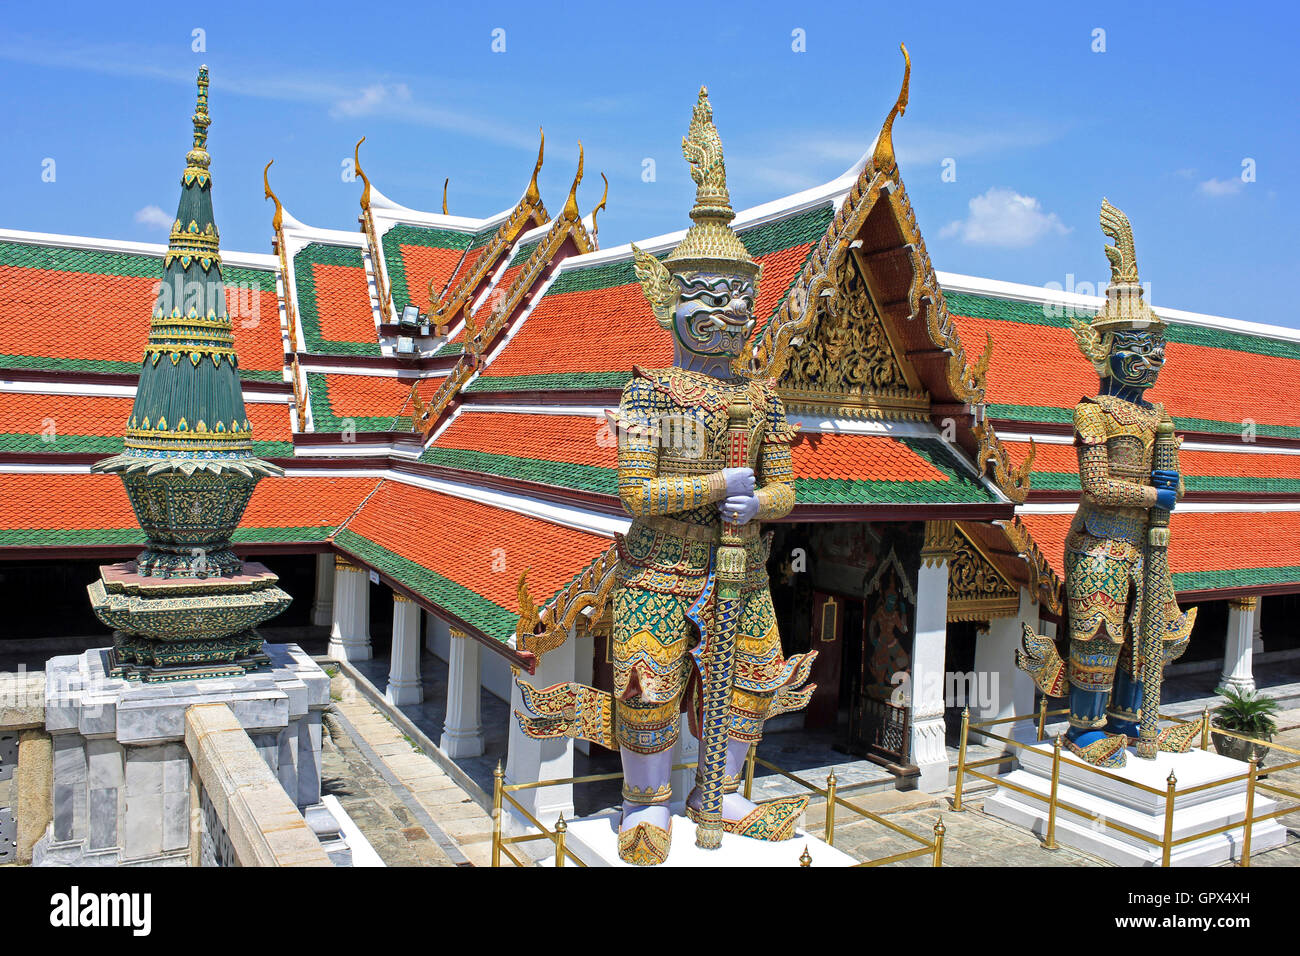 Wat Phra Kaew puerta está custodiada por un par de estatuas de yakshas, gigantes míticos de 5 metros (16 pies) de altura. Gran Palacio Bangkok Tailandia Foto de stock